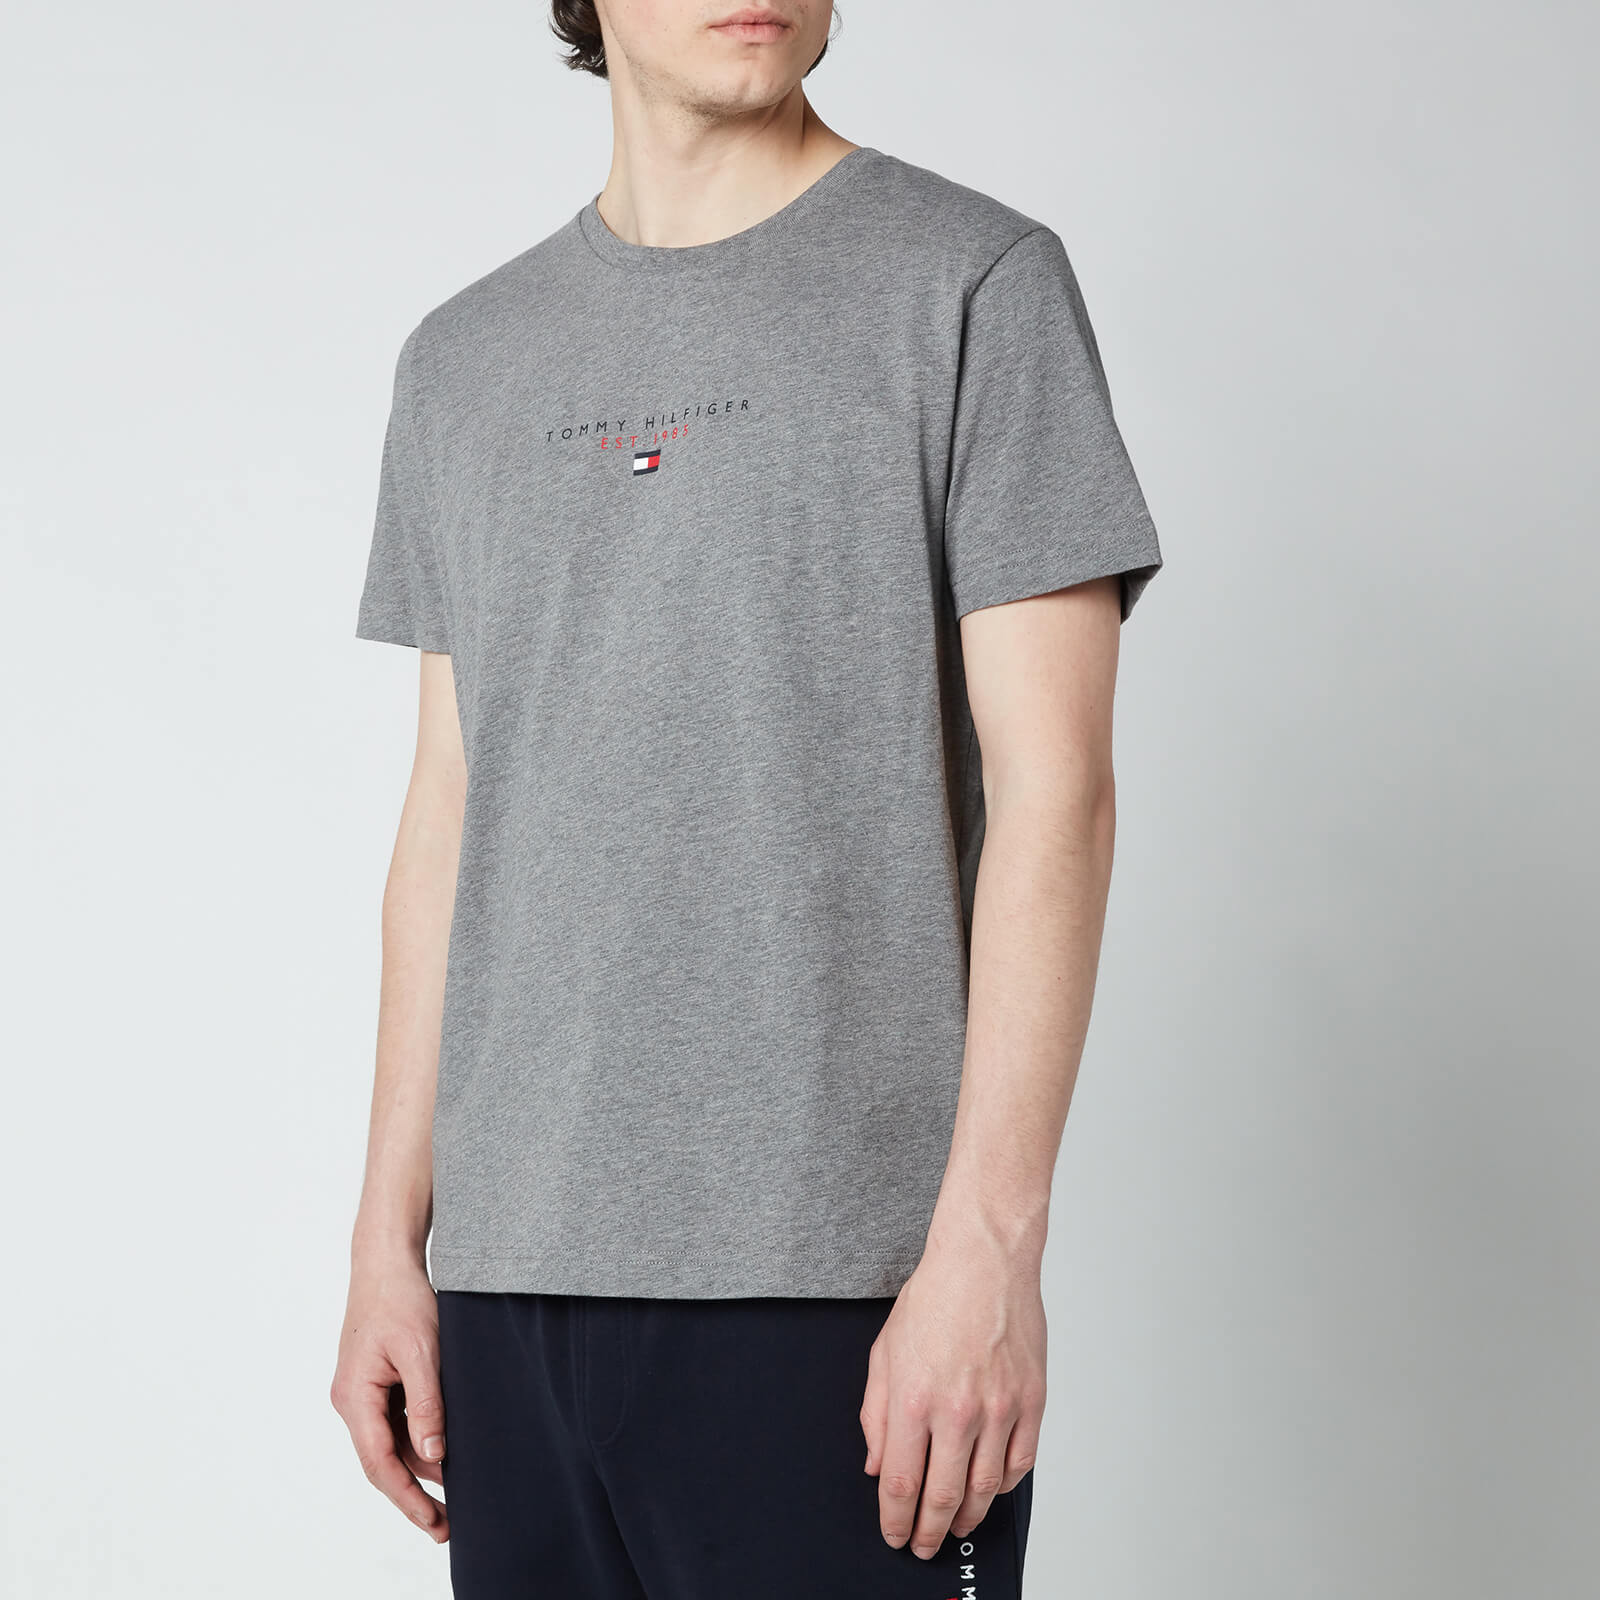 Tommy Hilfiger Men's Essential Chest Logo T-Shirt - Medium Grey Heather - S